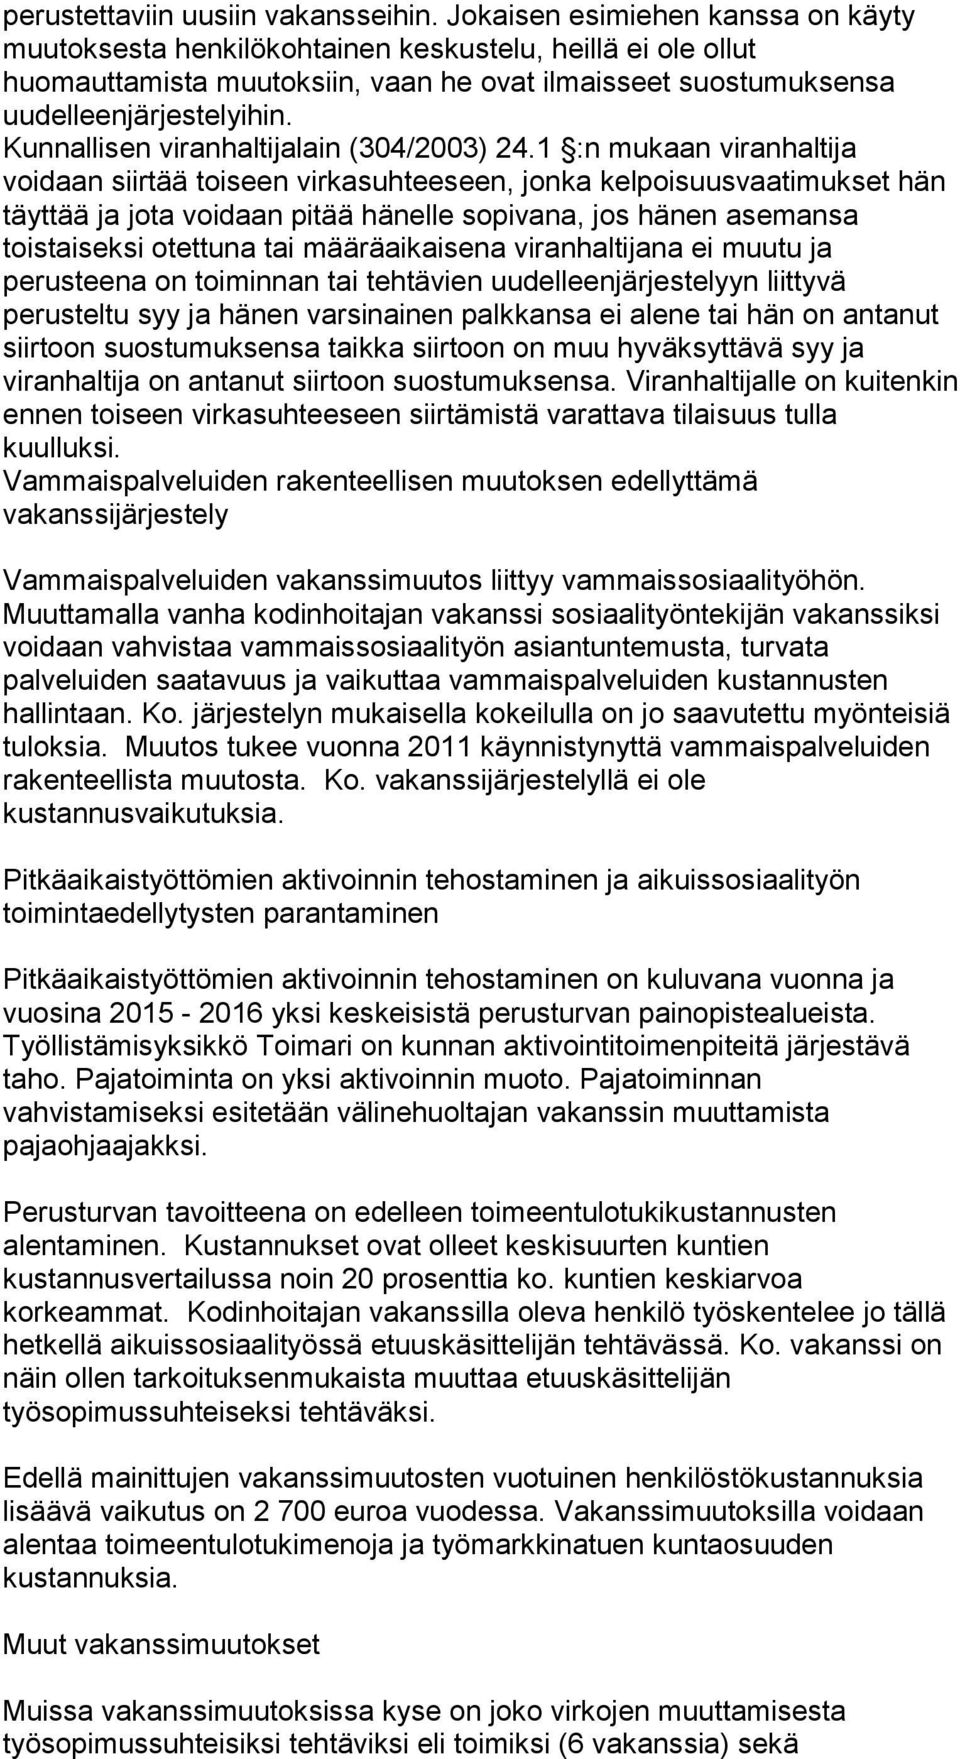 Kunnallisen viranhaltijalain (304/2003) 24.